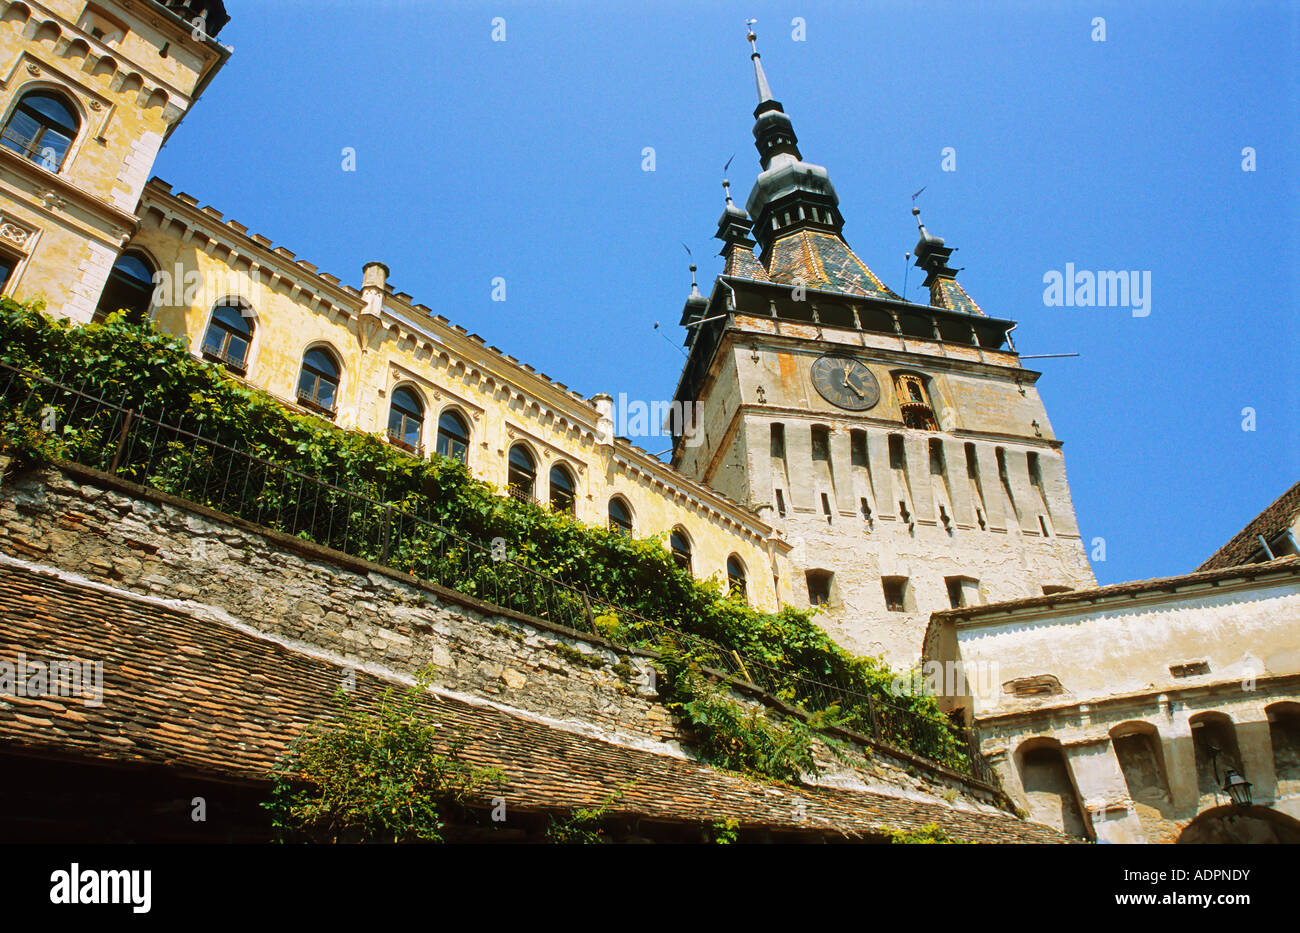 Sighisoara Segesvar torre dell orologio al di sopra delle porte di accesso alla cittadella medioevale Transilvania Romania Foto Stock